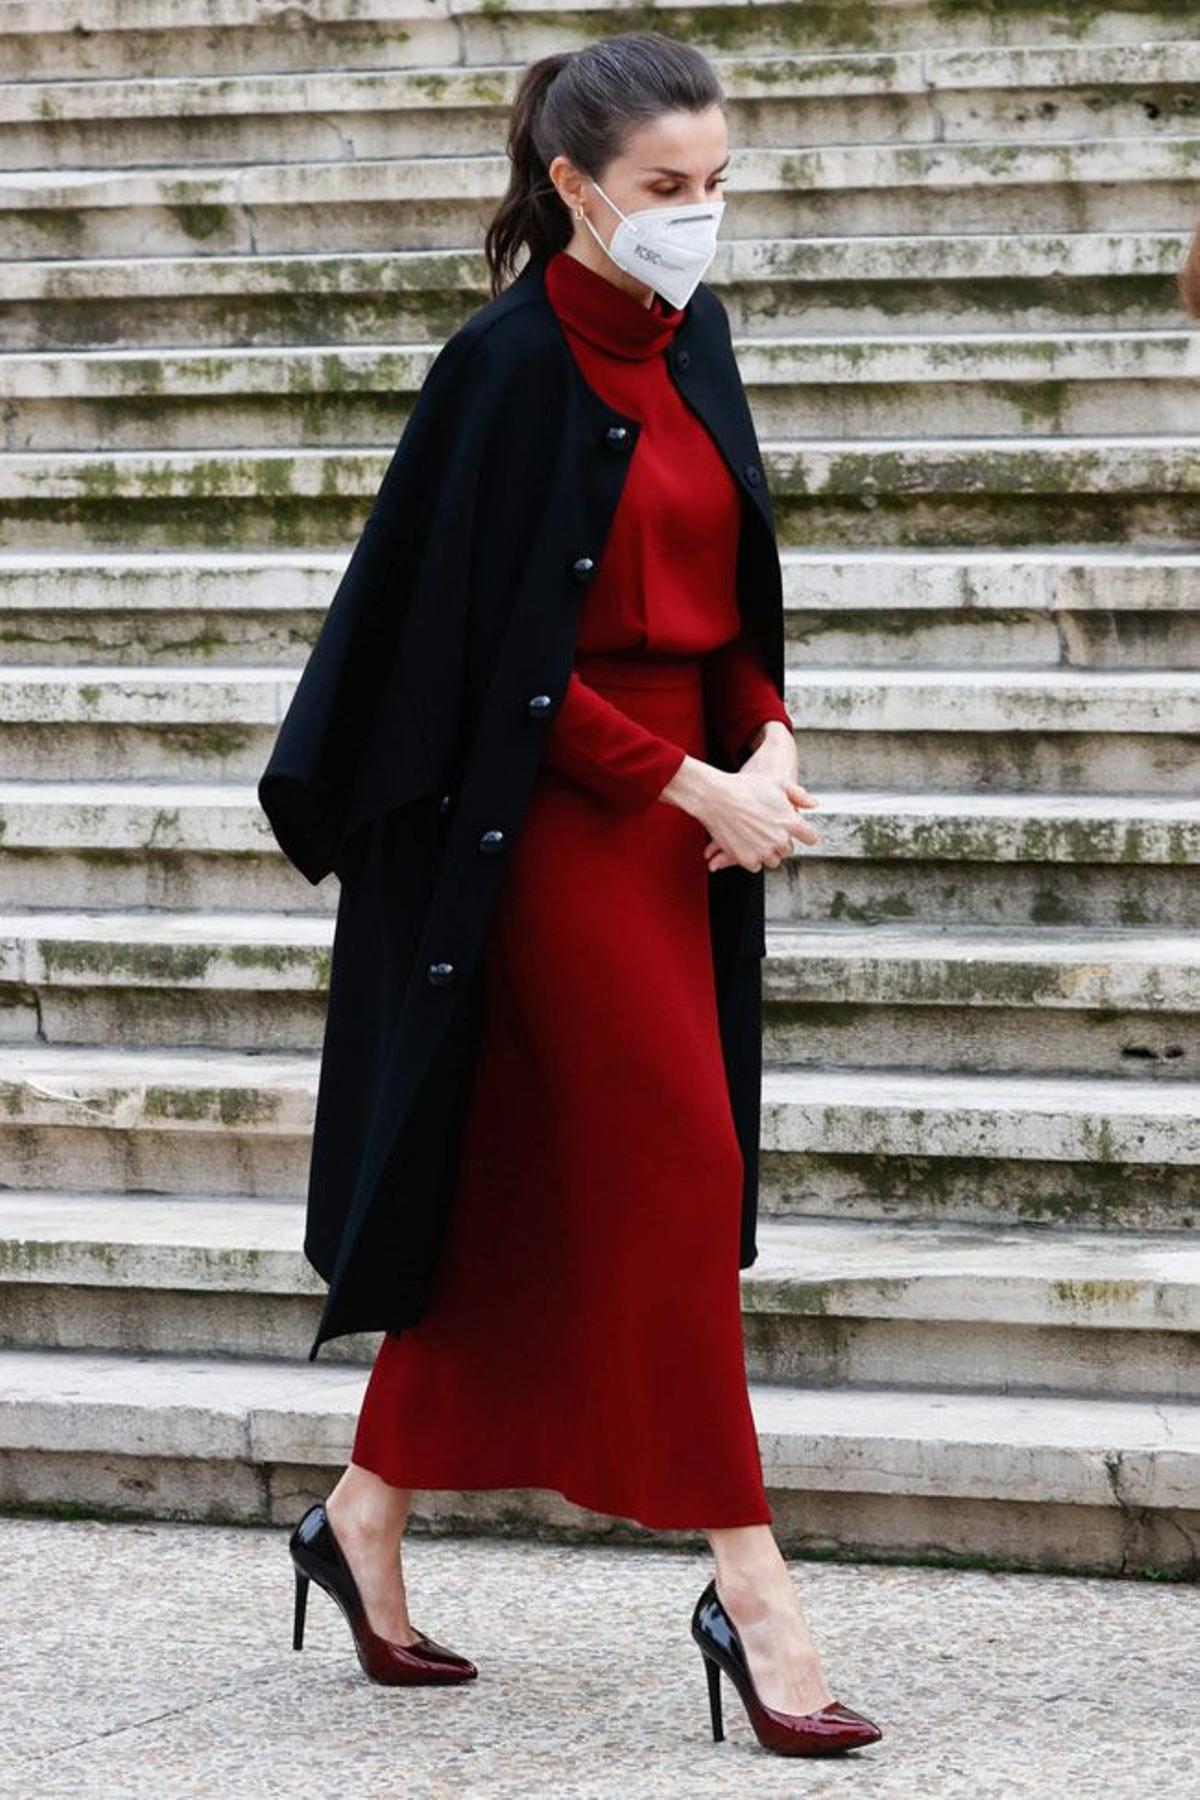 Del último look de la reina Letizia nos gusta todo (empezando el precioso vestido oscuro de las rebajas de Dutti) - Woman